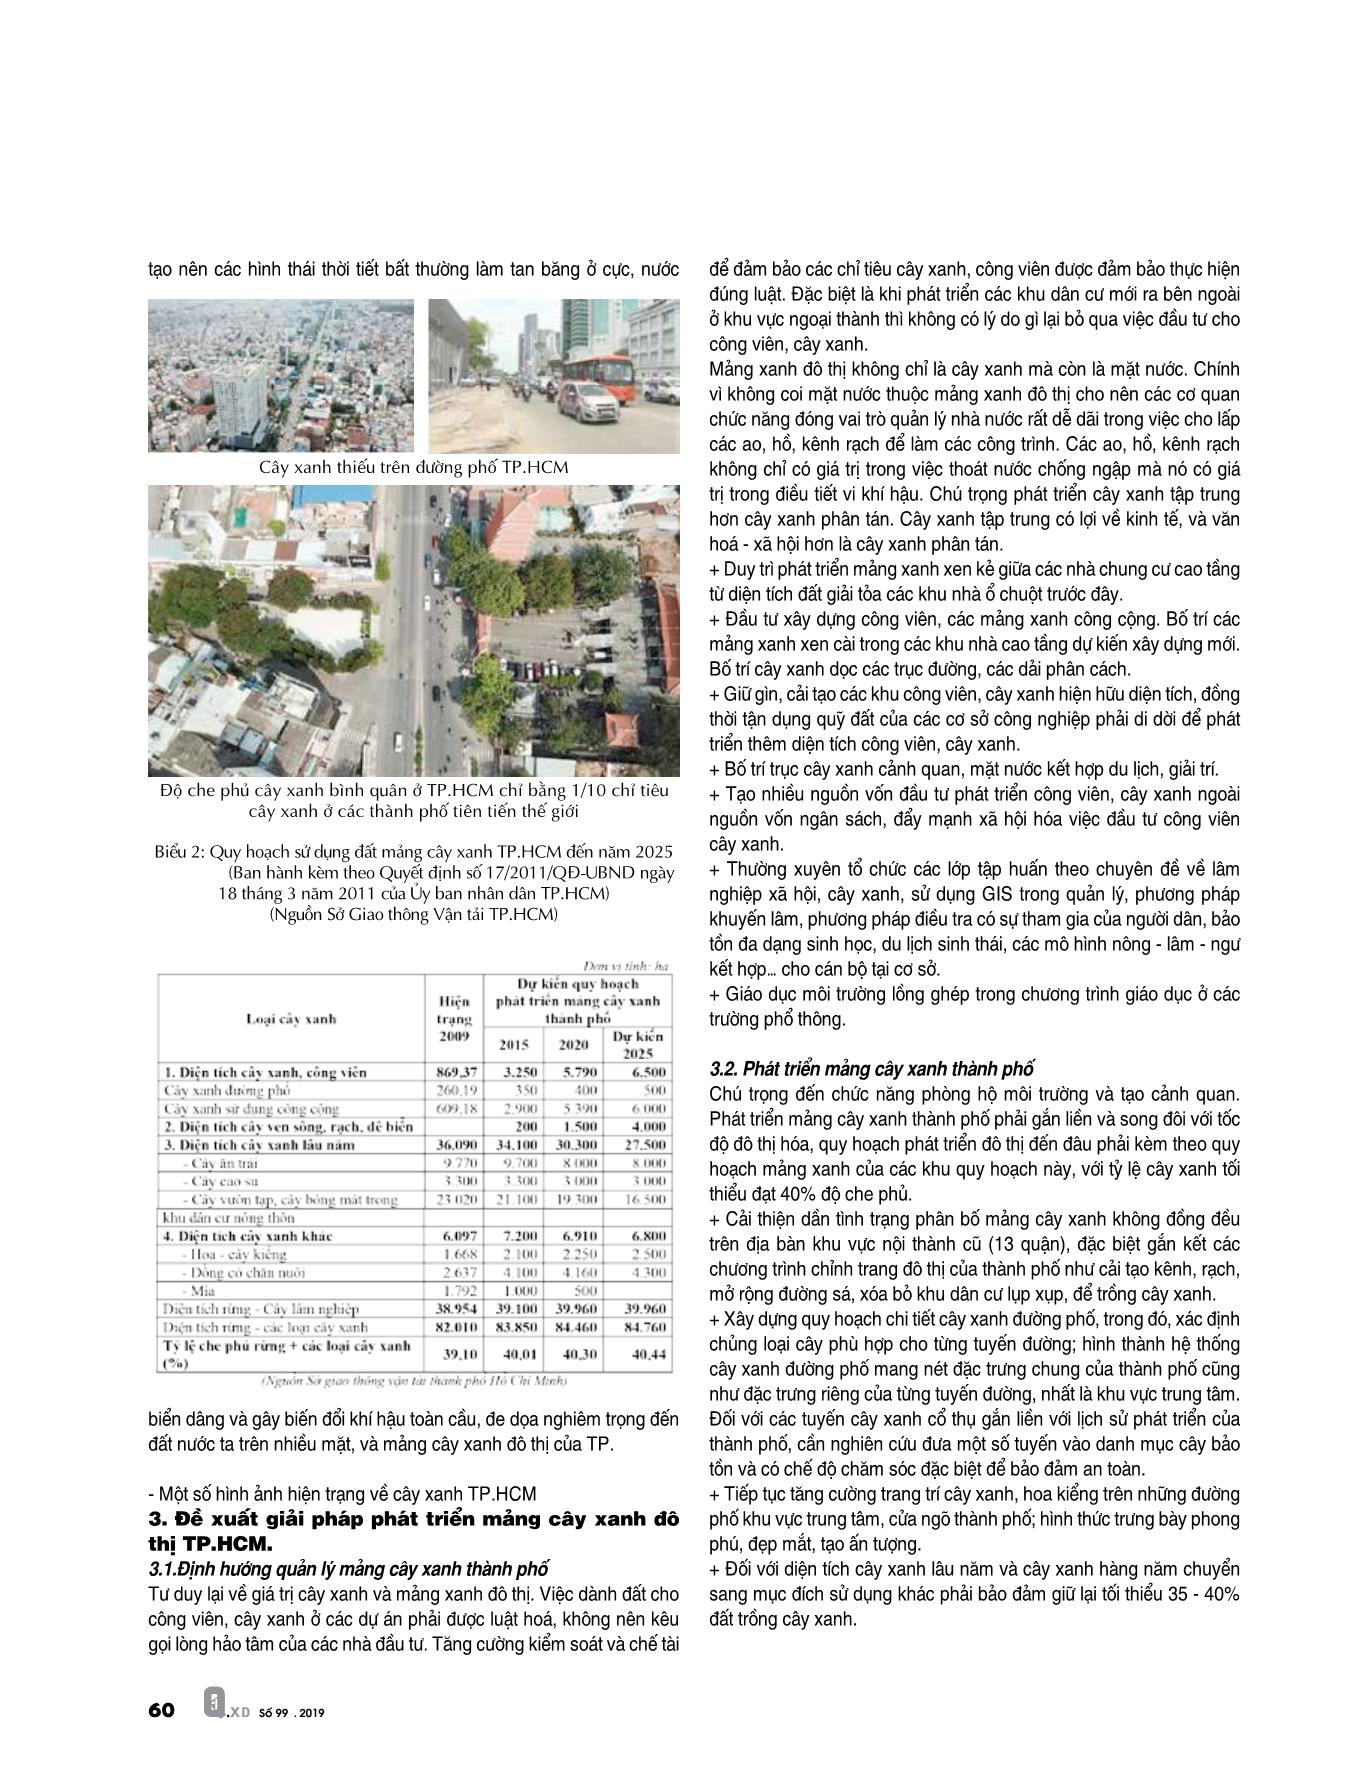 Thực trạng và giải pháp phát triển mang cây xanh đô thị thành phố Hồ Chí Minh trang 5